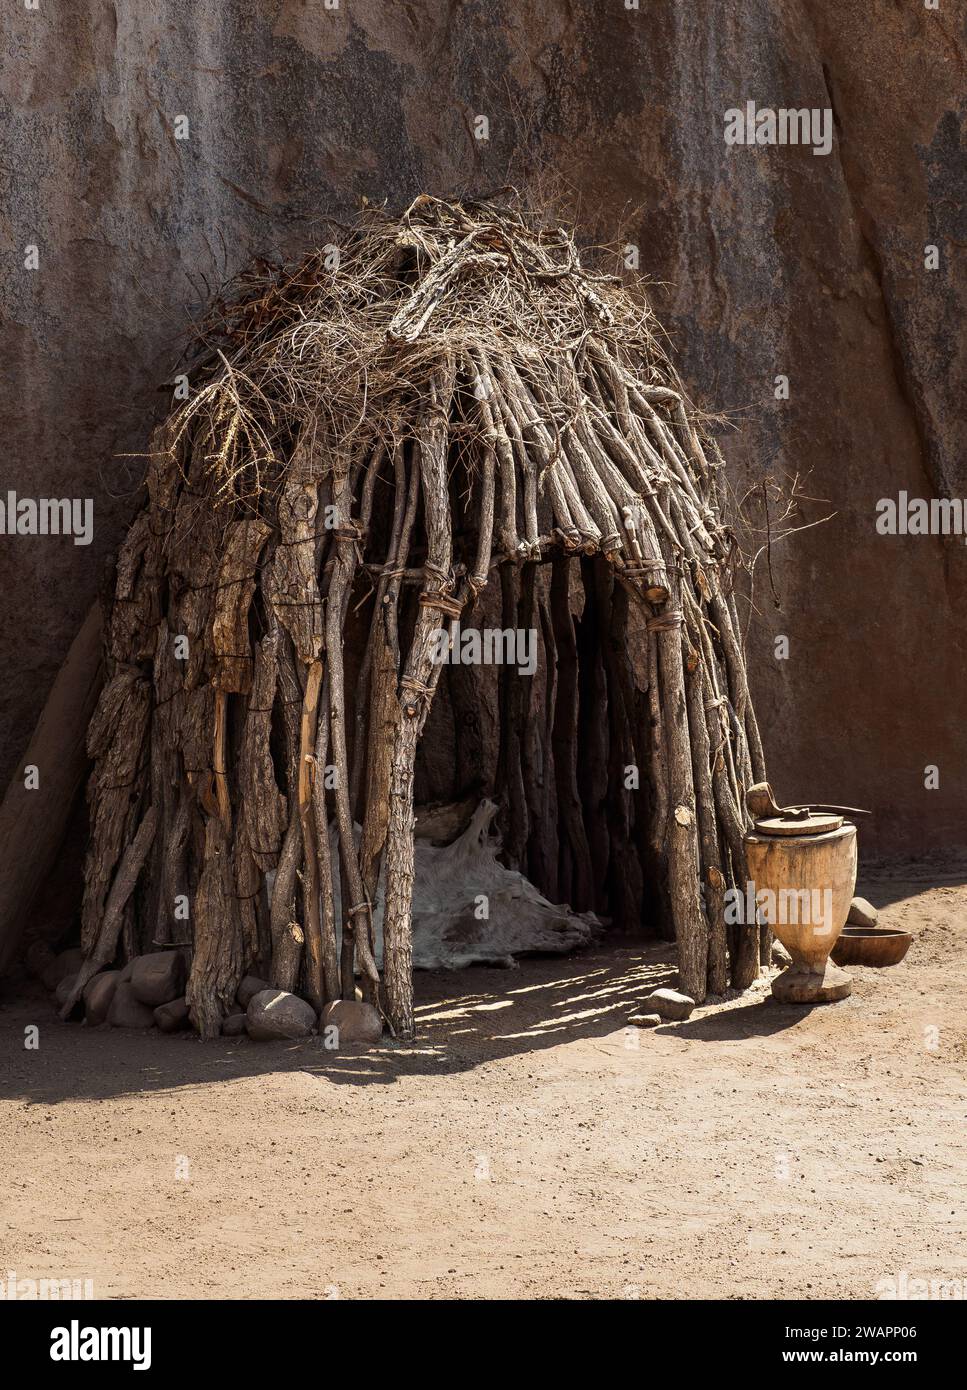 Cabane en bois près de la paroi rocheuse dans le village de la tribu Damara faite à partir de branches sèches, Afrique australe. Traditions culturelles des housin indigènes africains Banque D'Images